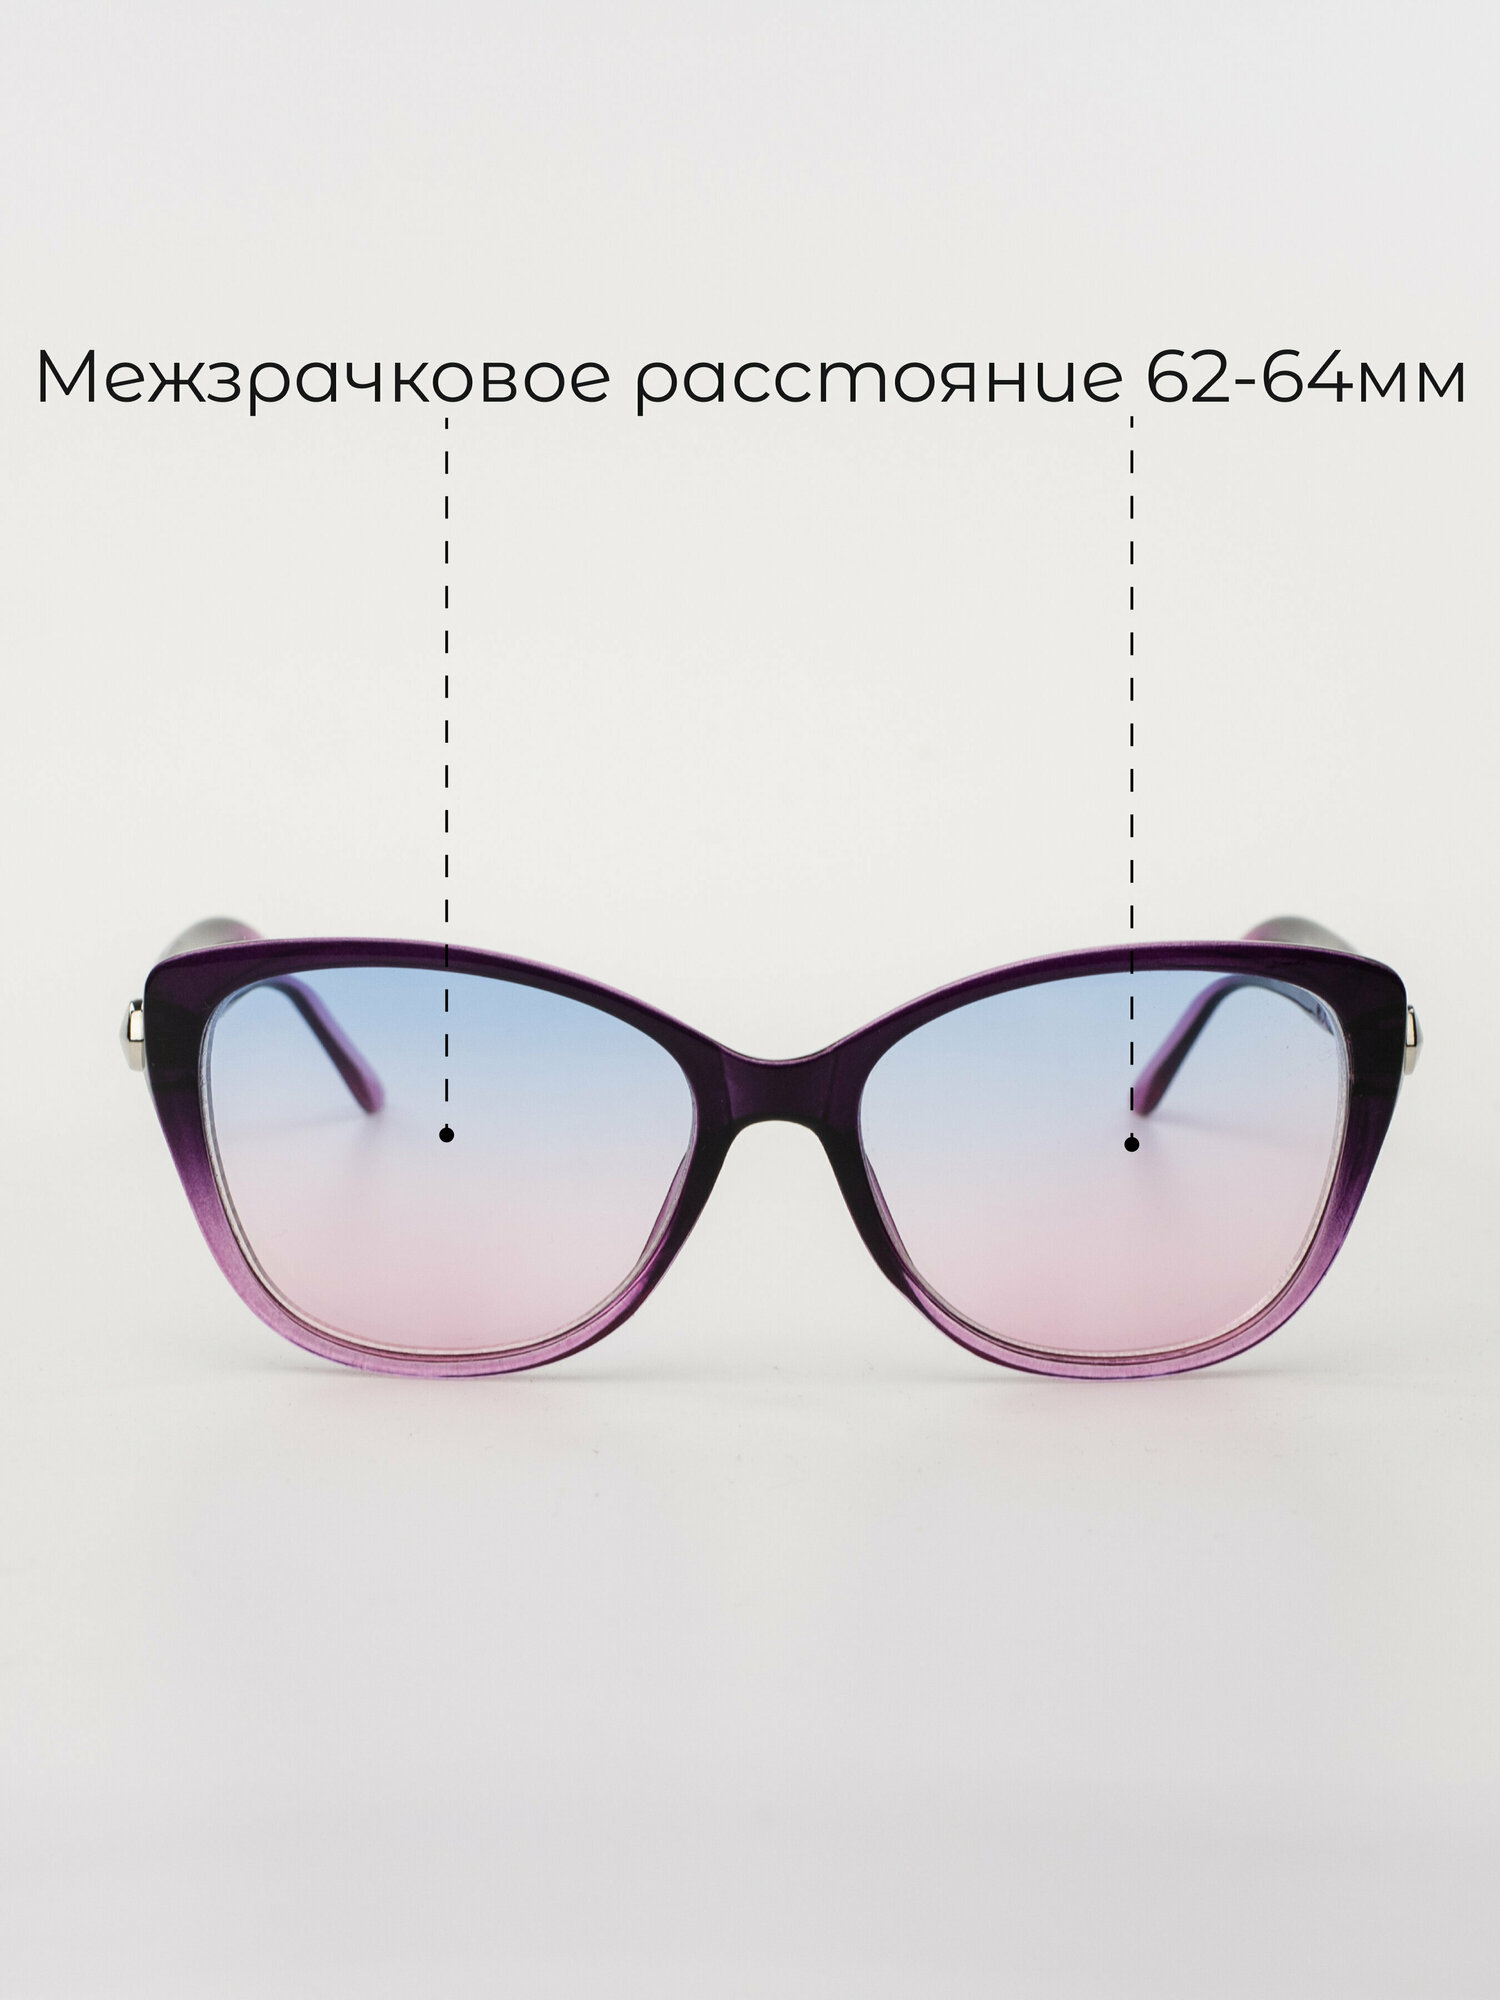 Очки для зрения женские -2 Готовые корригирующие очки с диоптрией -2.0 Тонированные линзы